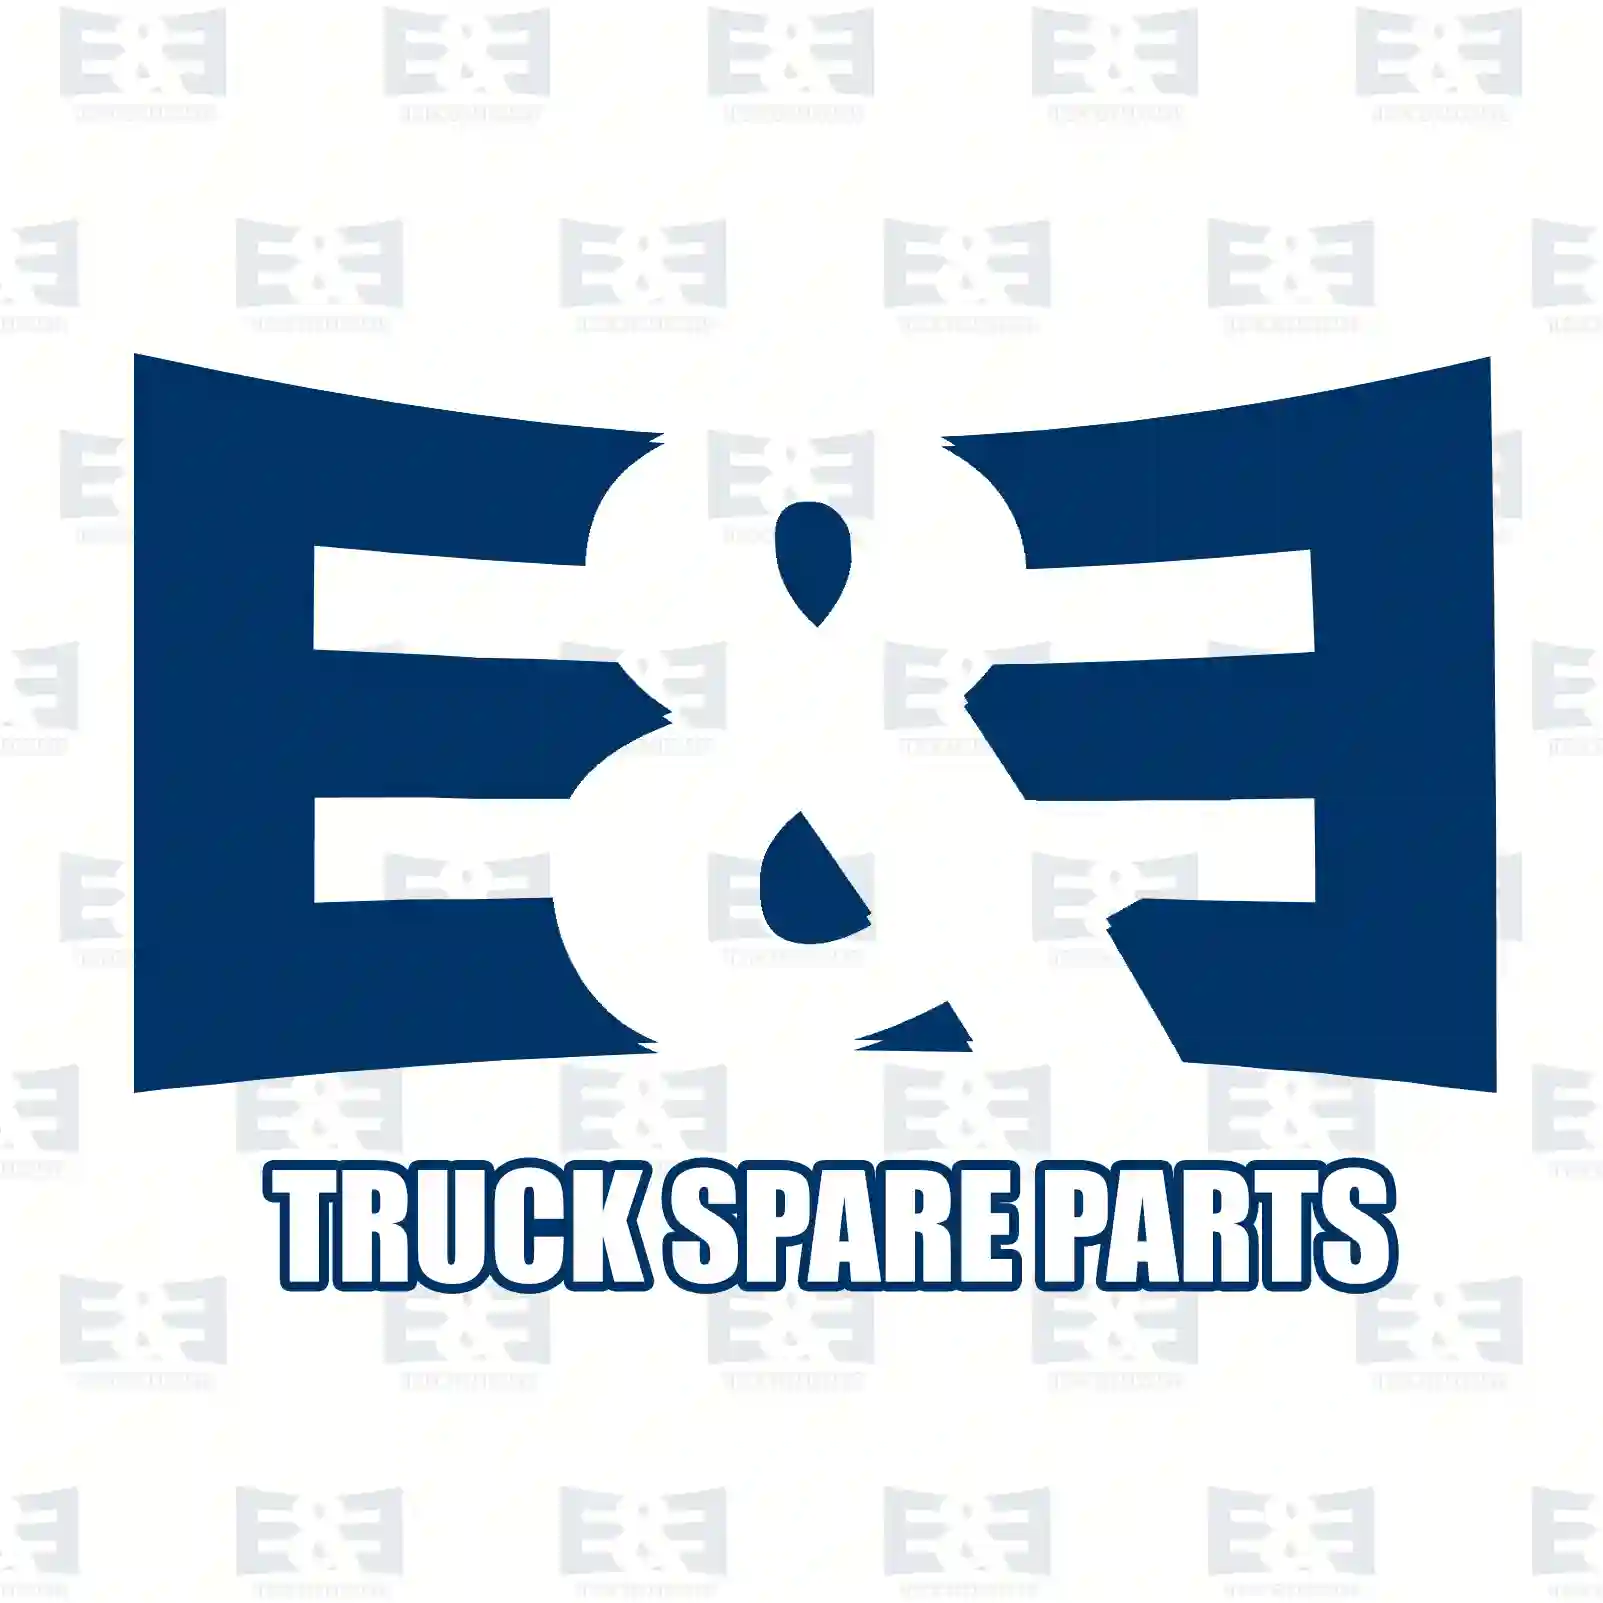 Repair kit, plug, 2E2298810, 0155456526S2 ||  2E2298810 E&E Truck Spare Parts | Truck Spare Parts, Auotomotive Spare Parts Repair kit, plug, 2E2298810, 0155456526S2 ||  2E2298810 E&E Truck Spare Parts | Truck Spare Parts, Auotomotive Spare Parts